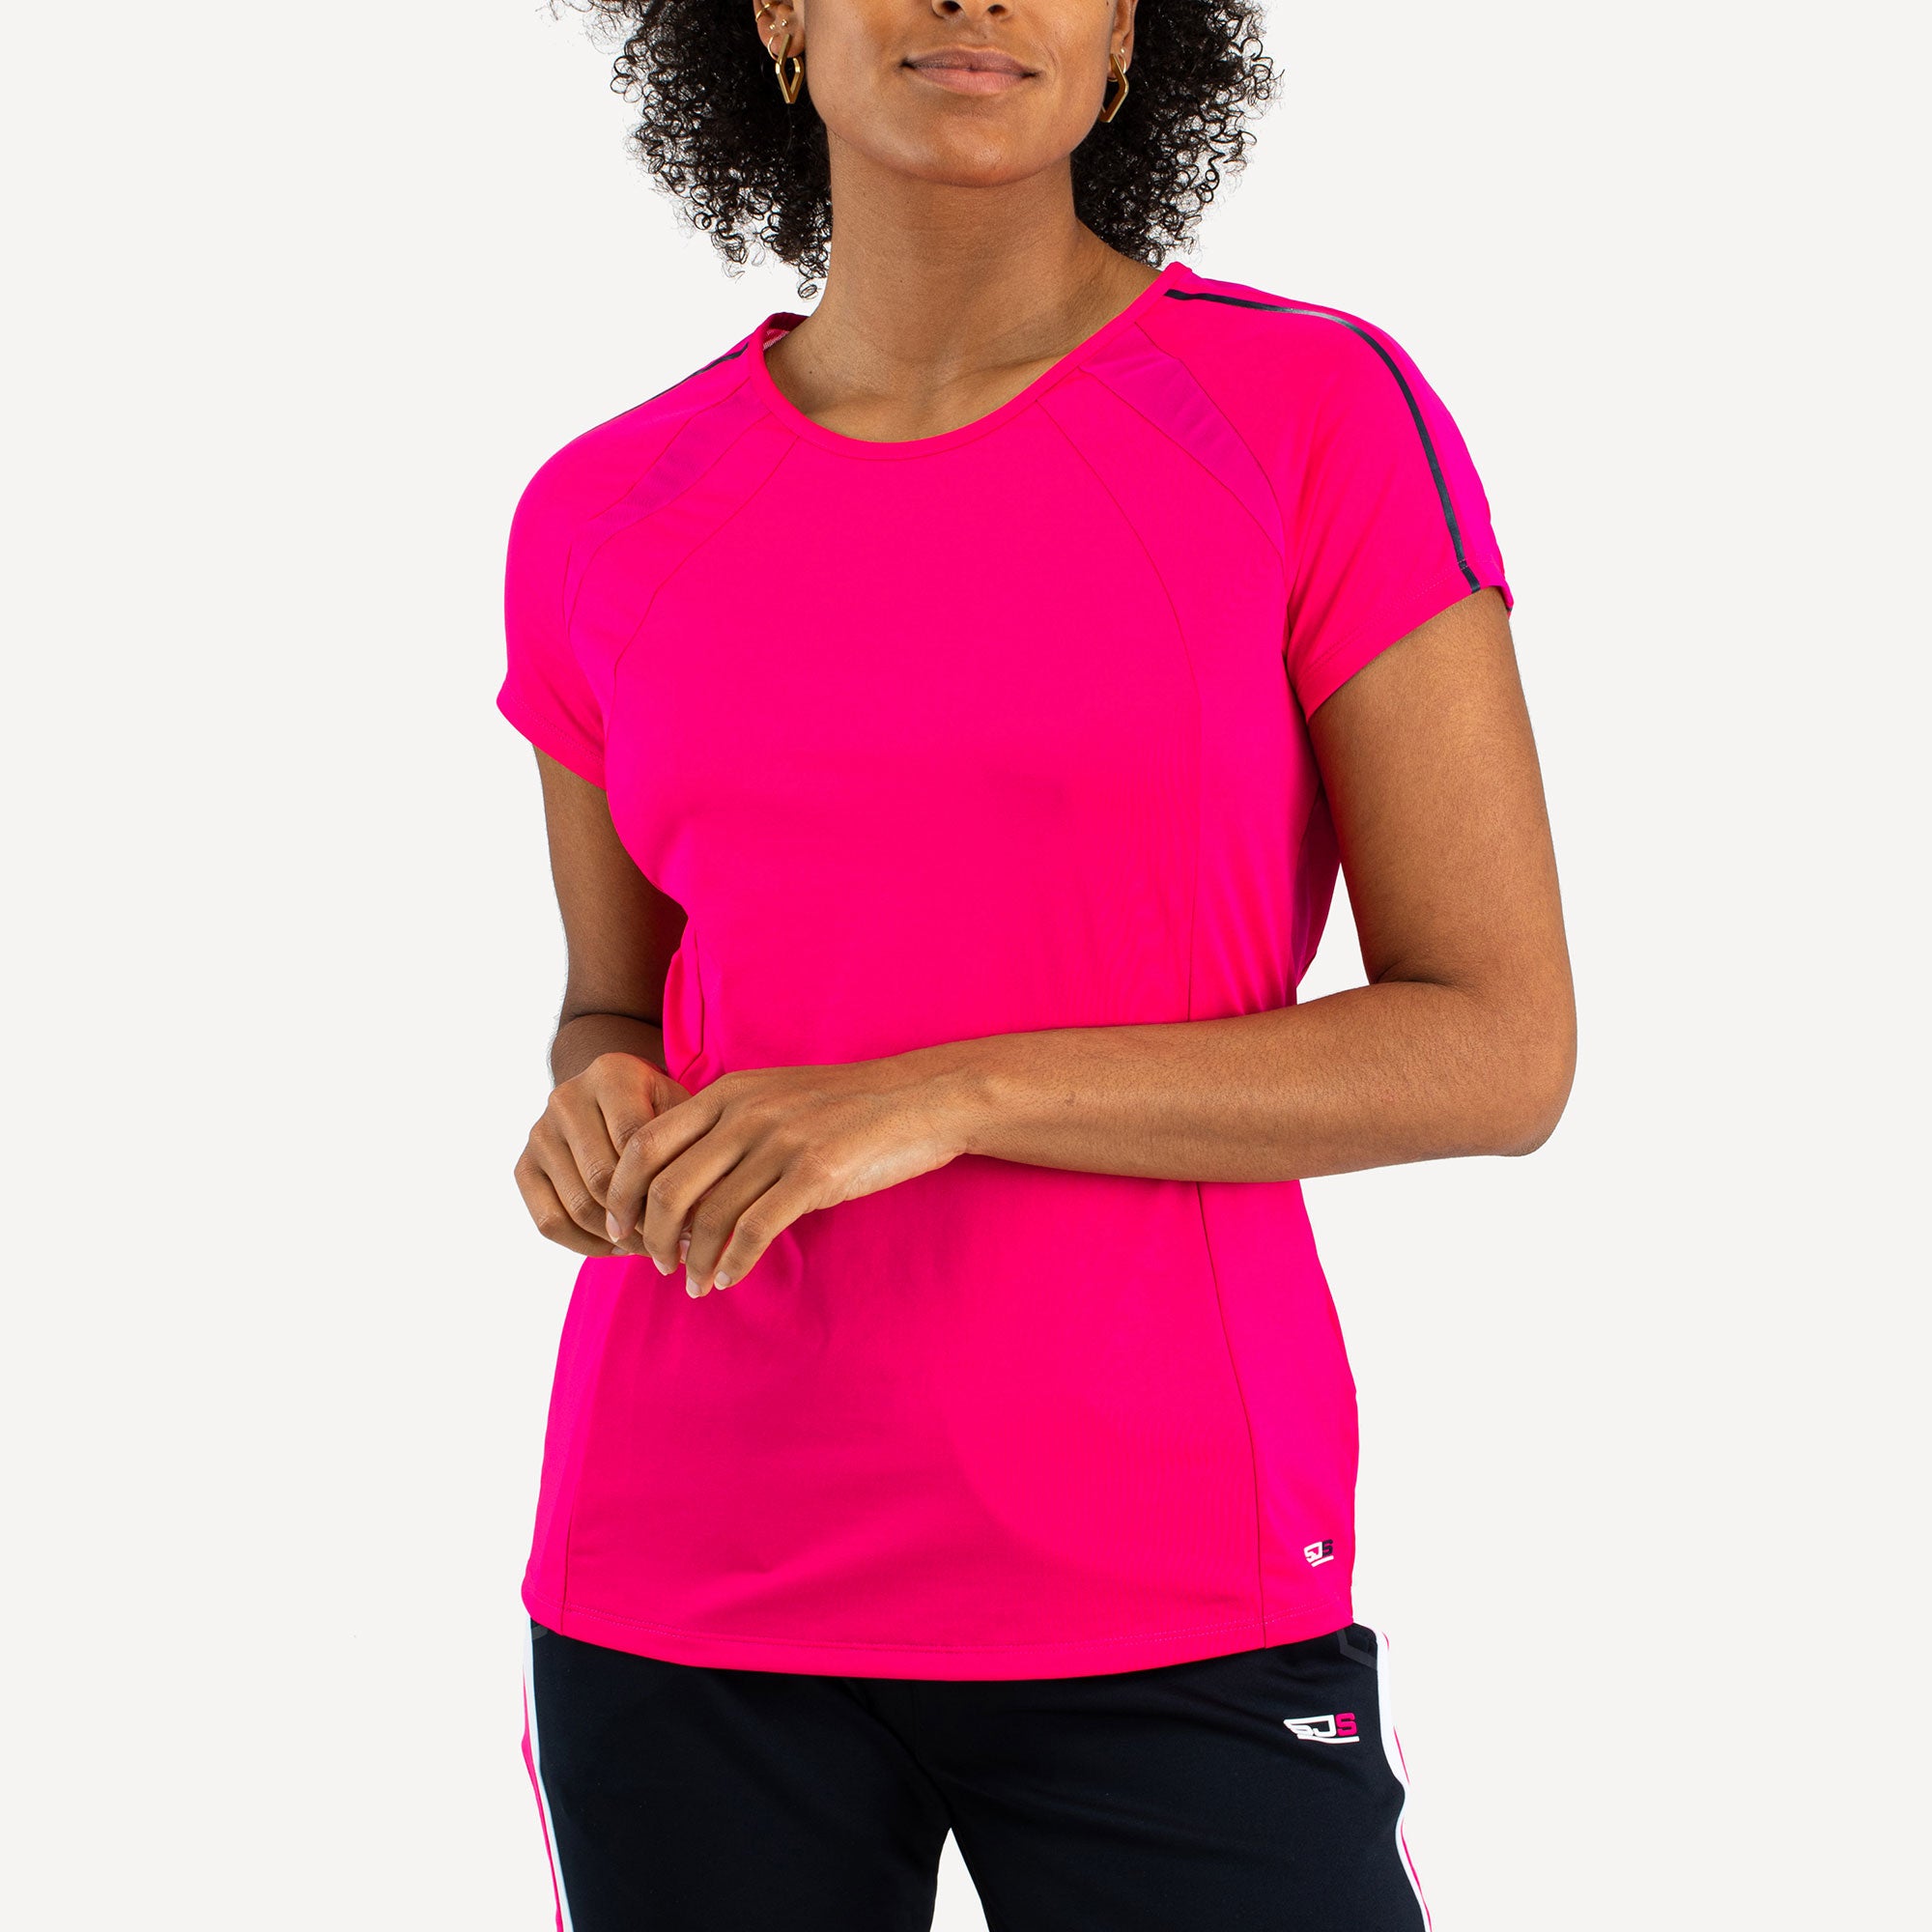 Sjeng Sports Djuna Women's Tennis Shirt Pink (1)